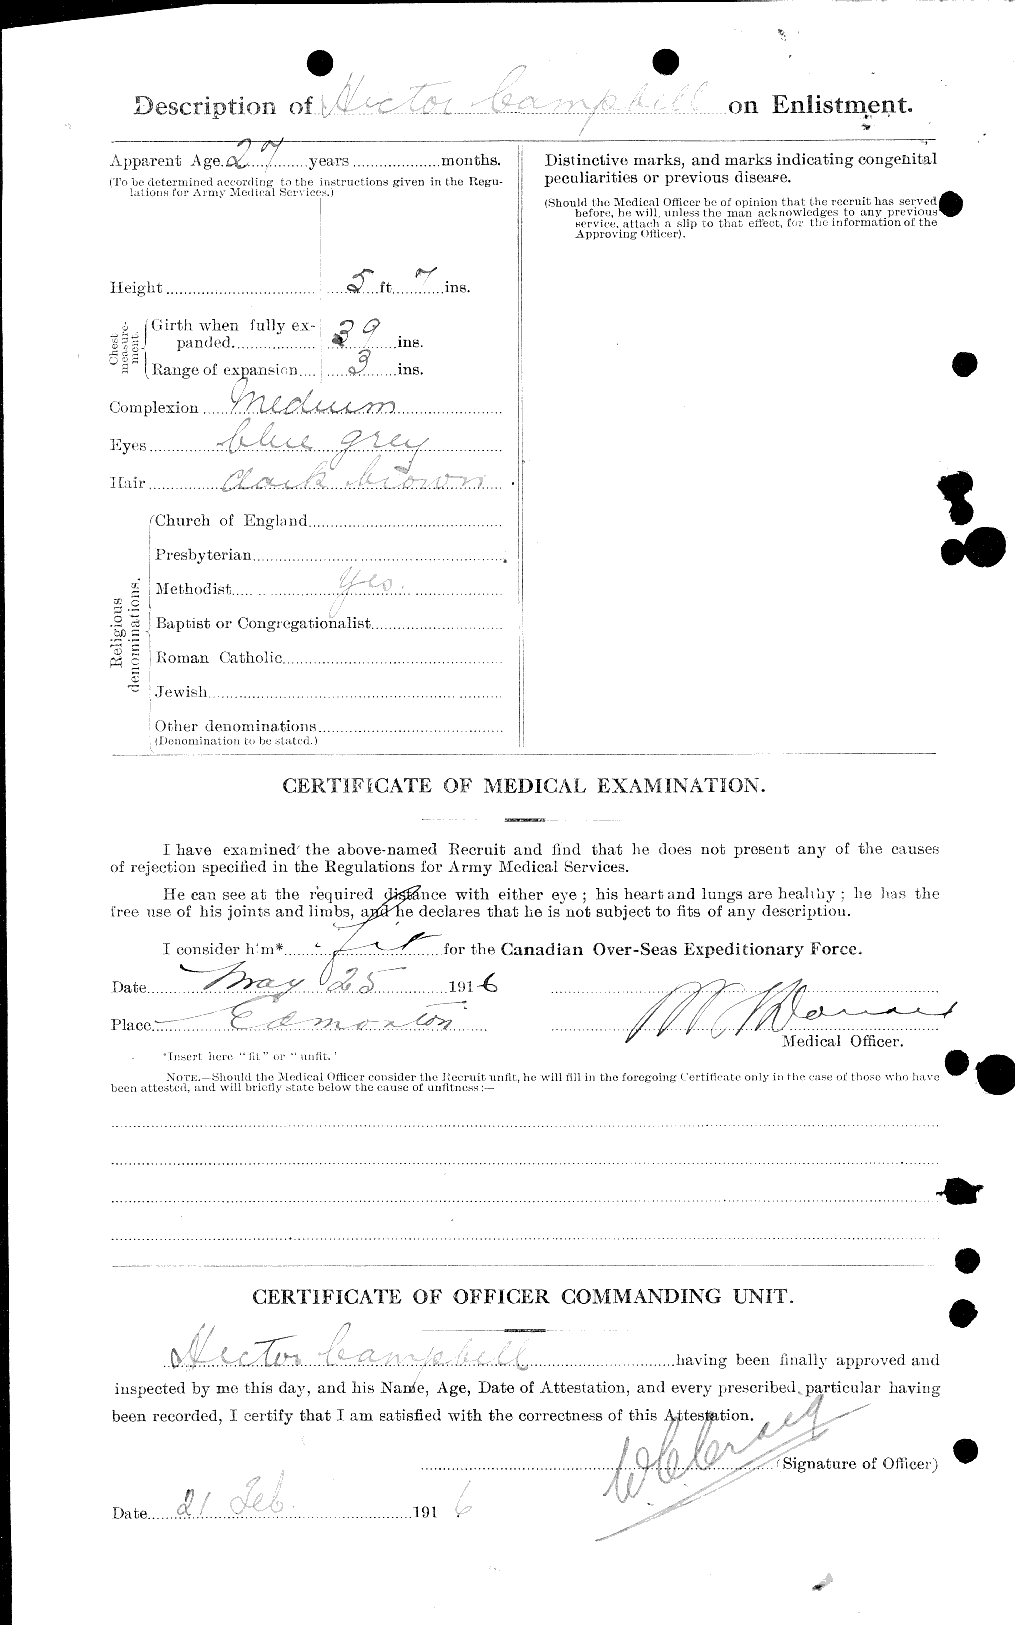 Dossiers du Personnel de la Première Guerre mondiale - CEC 008400b